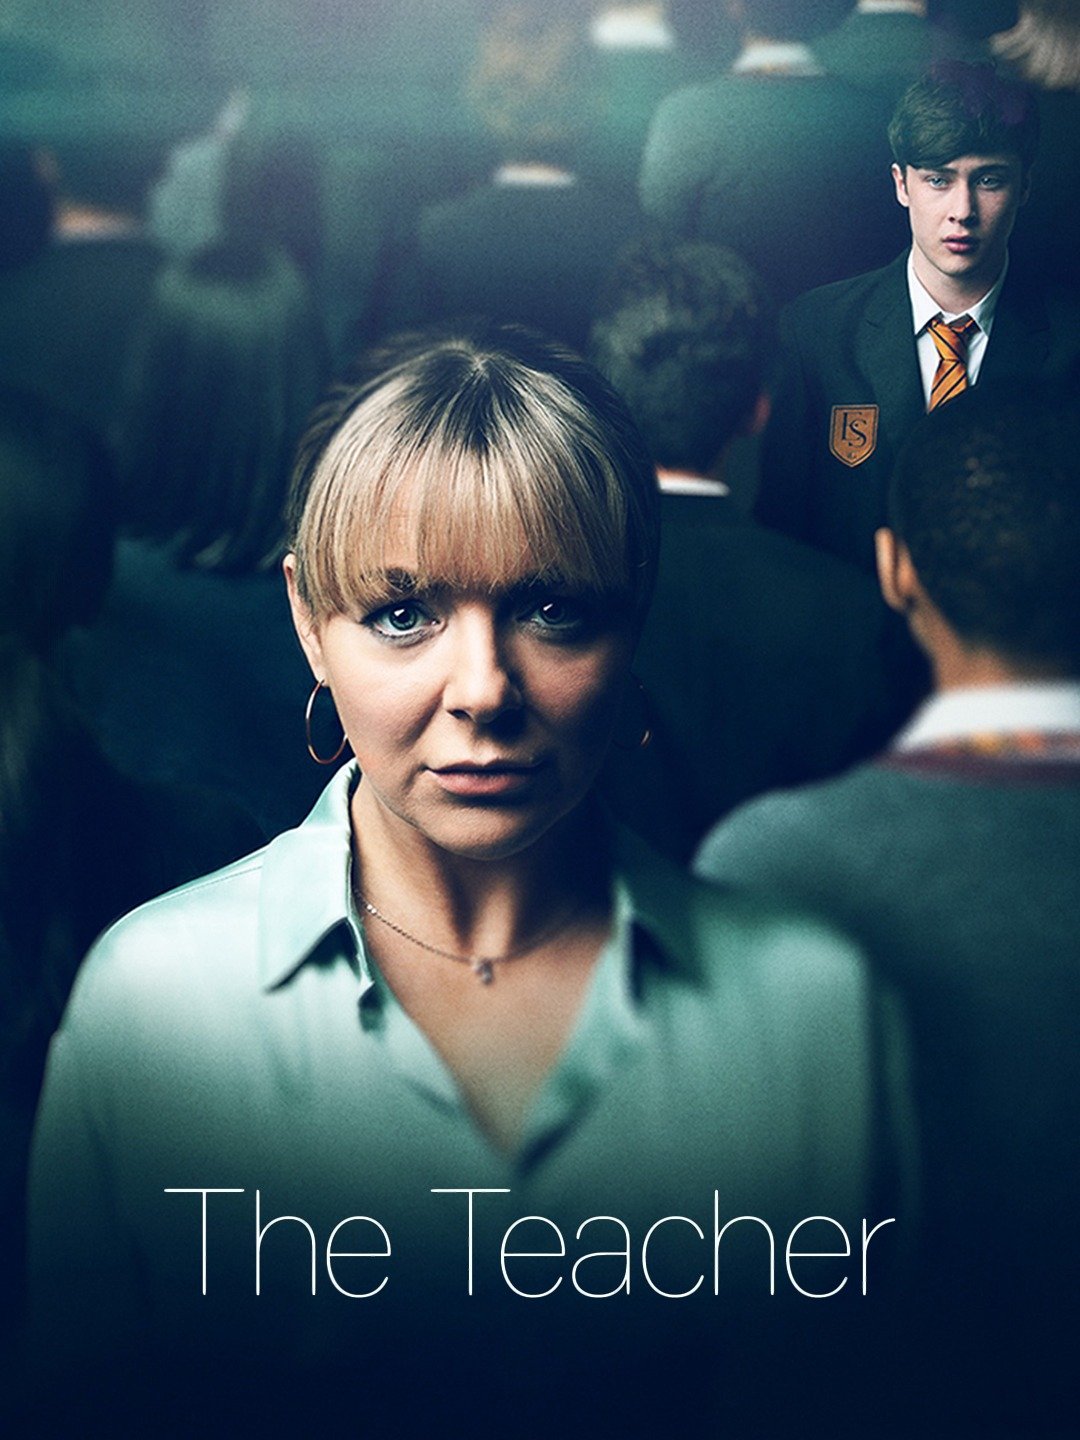 Miss teacher 2 movie